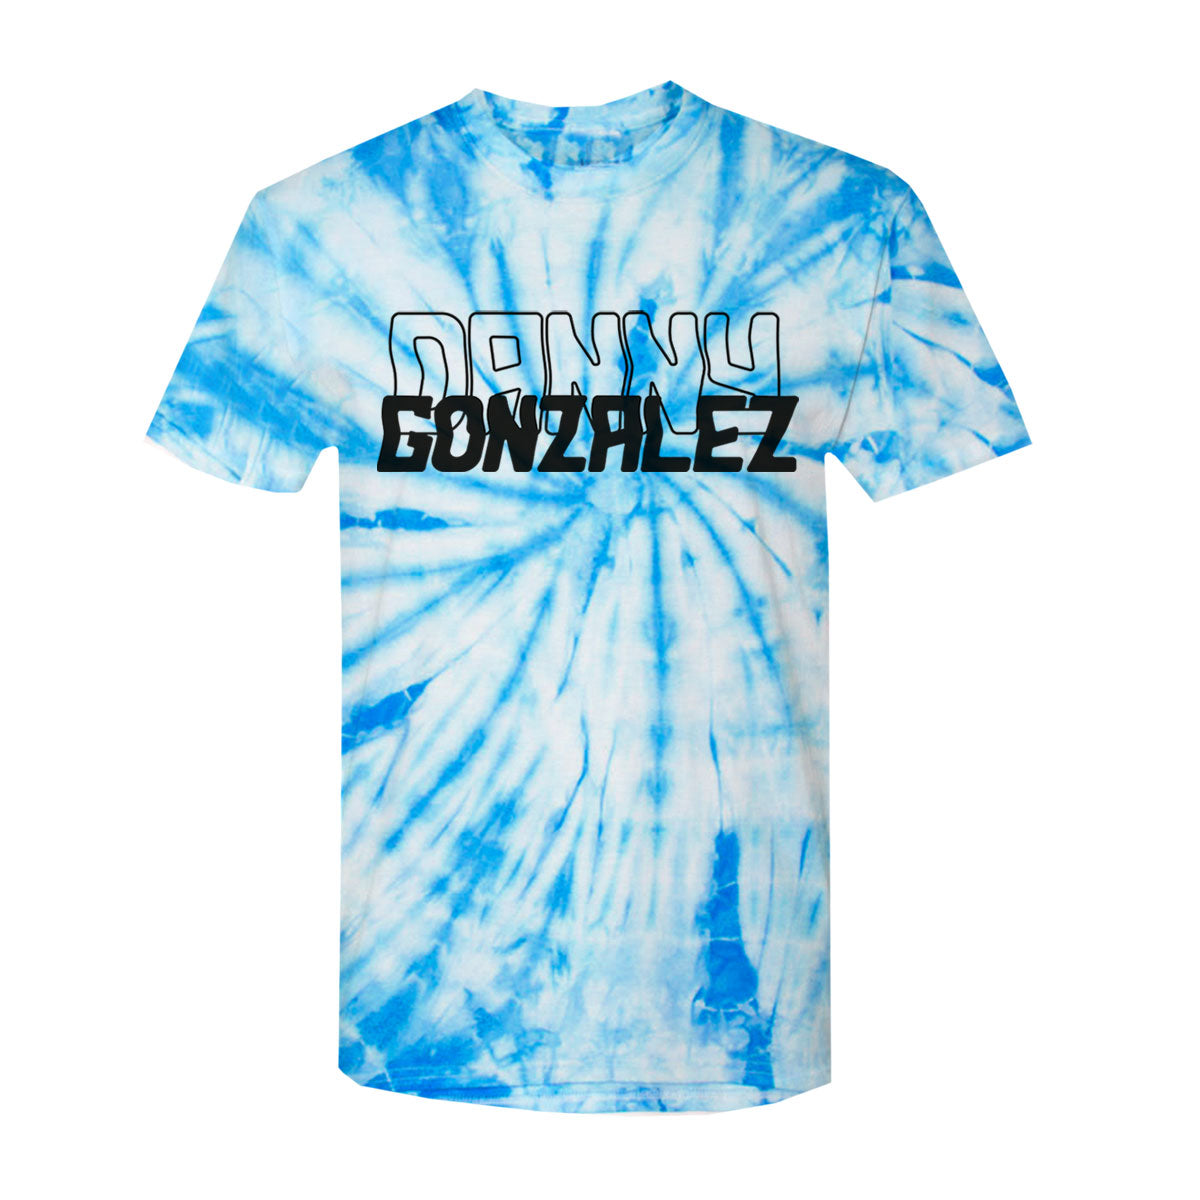 Danny Gonzalez "Logo" Blue Tie Dye Tee